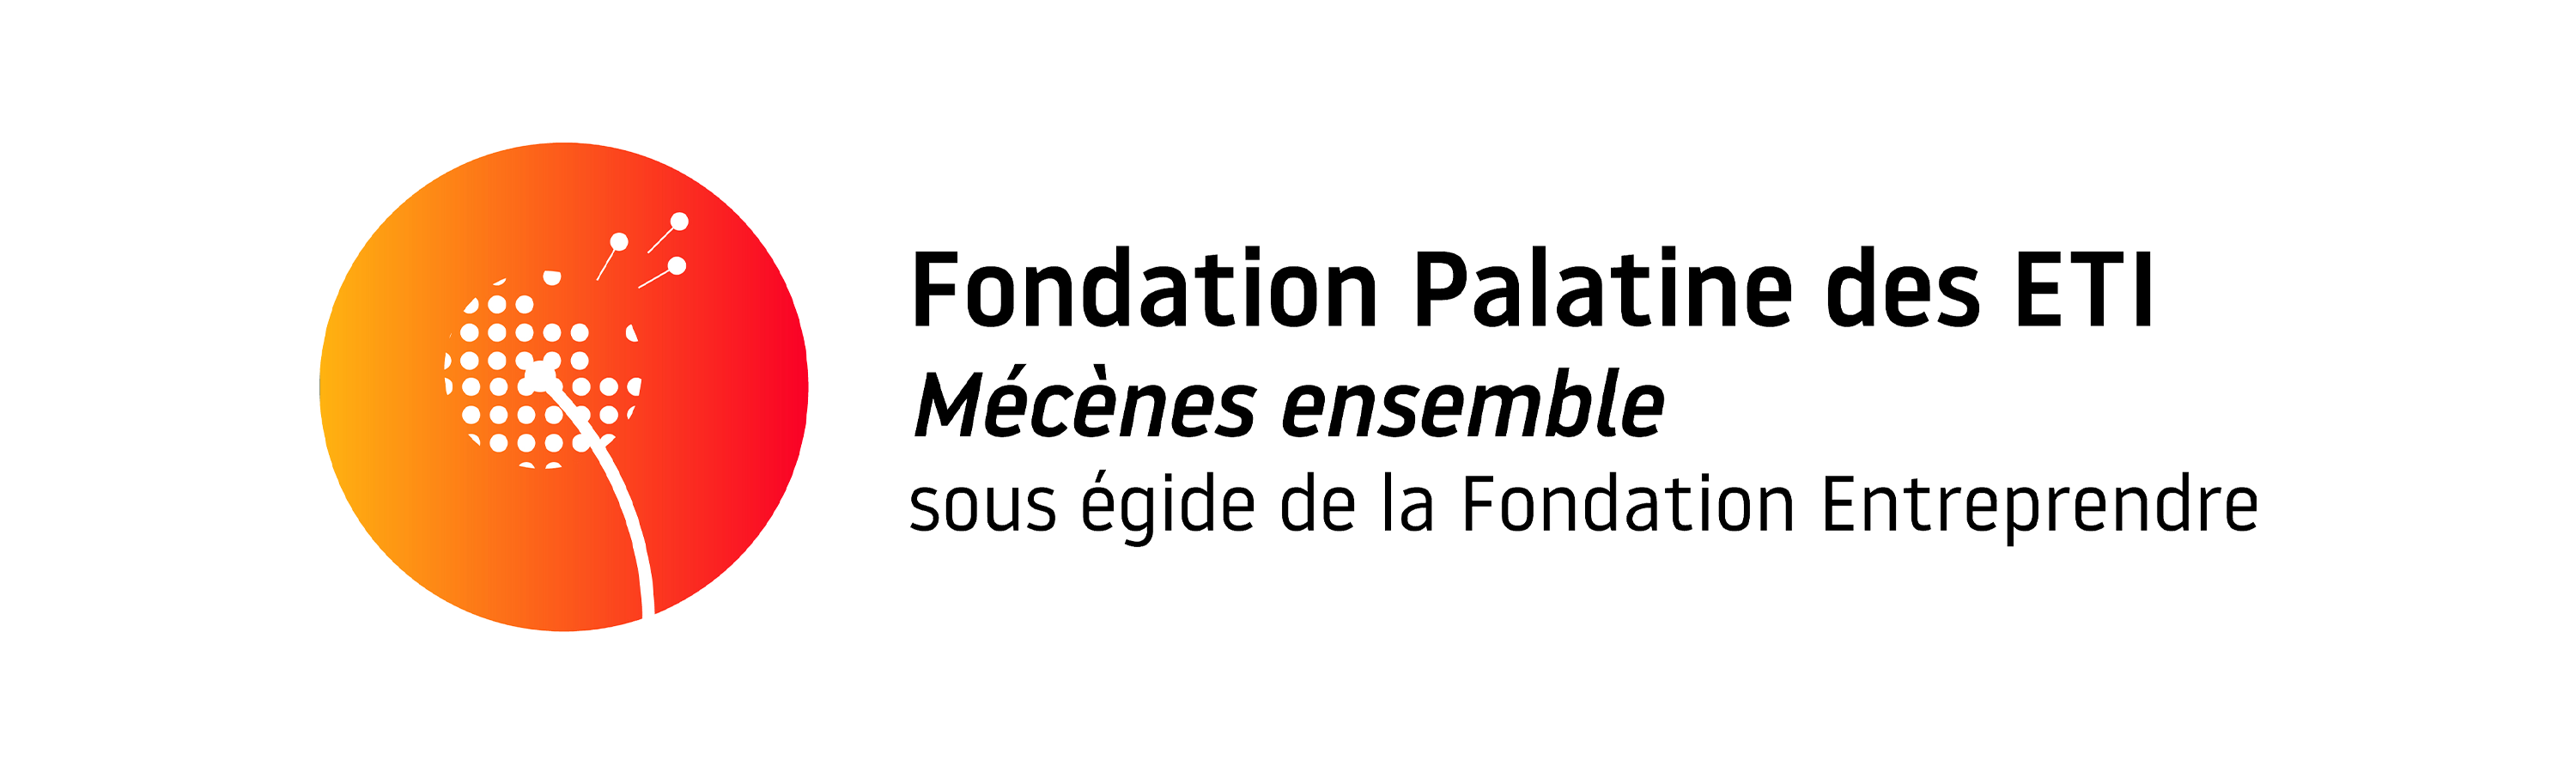 Bannière fondation ETI_VF.png